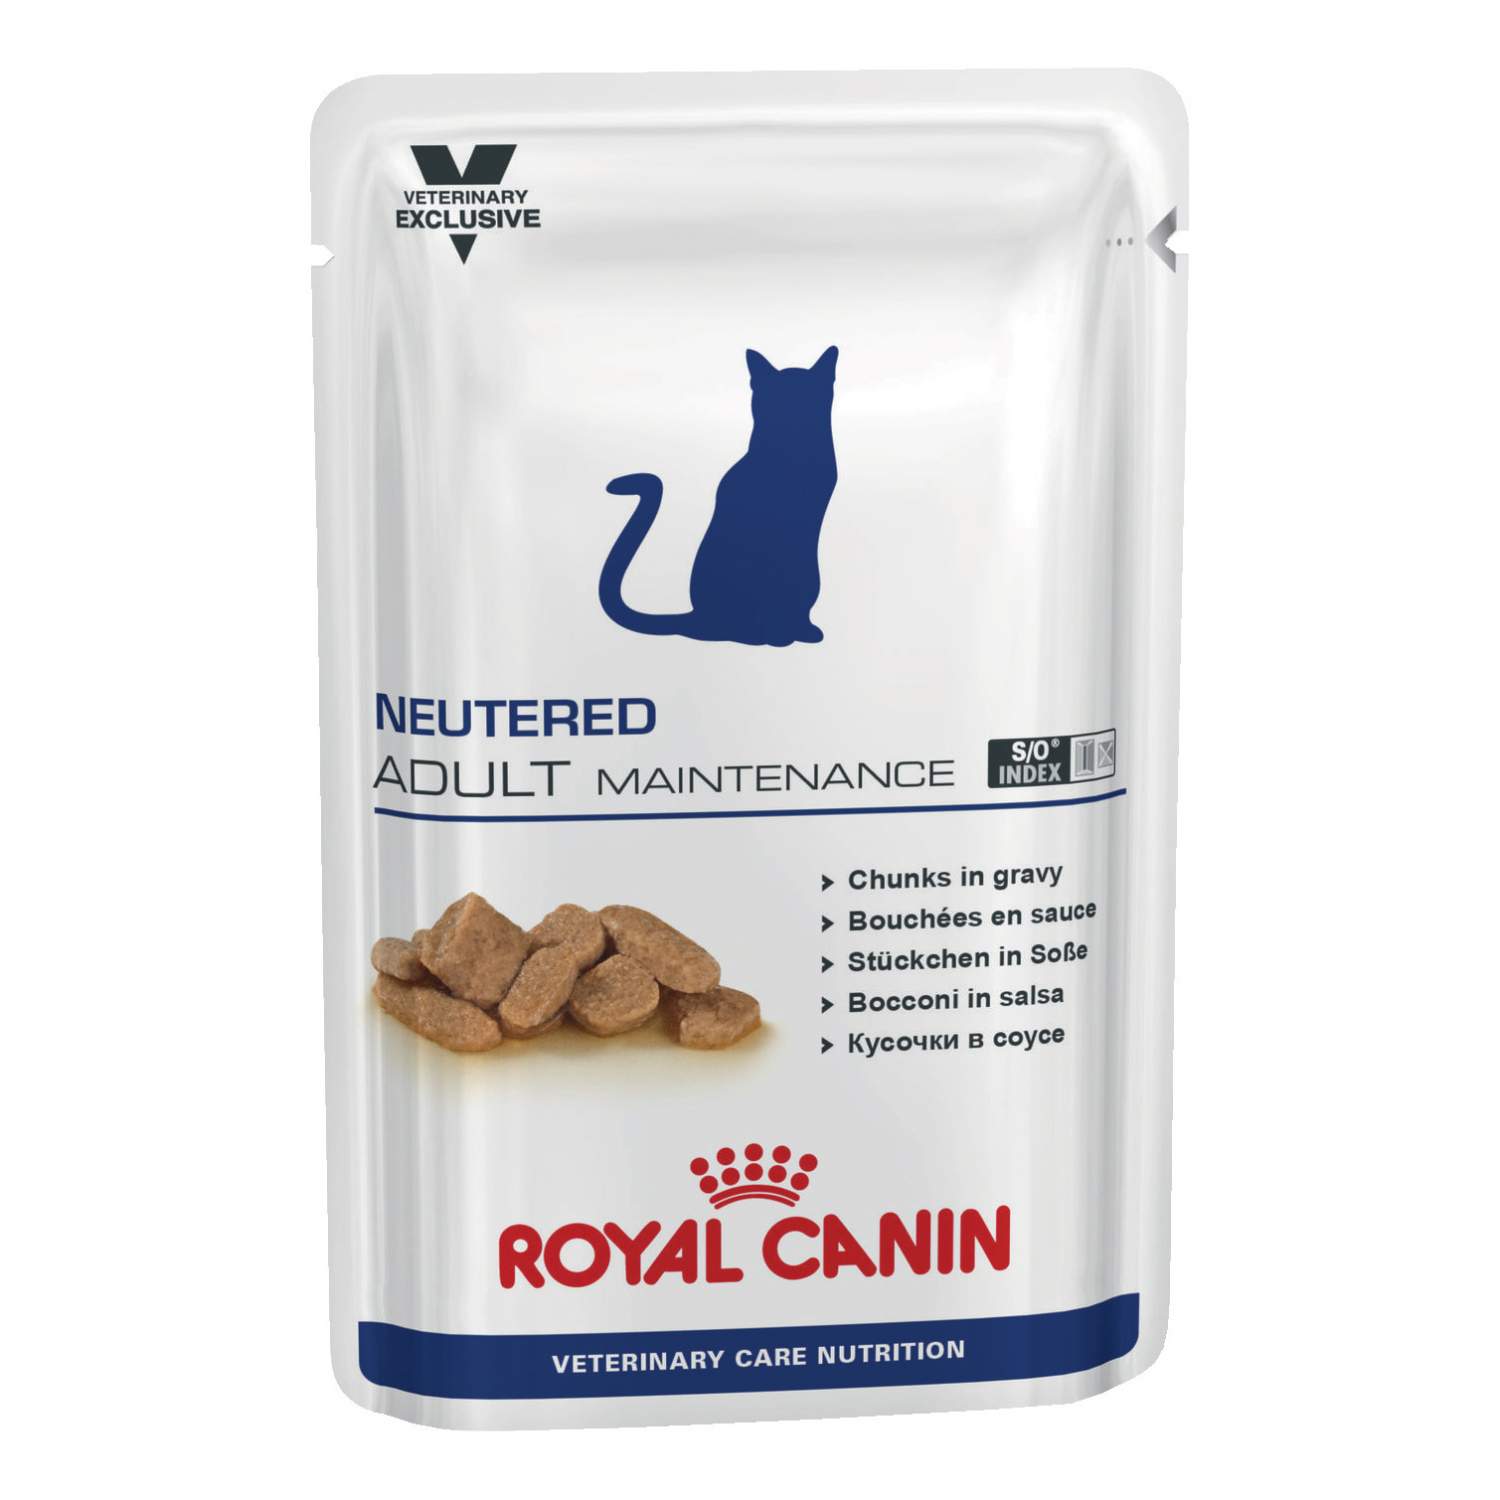 Royal Canin Ньютрид Эдалт Мэйнтенэнс Корм консервированный для кошек (пауч) от зоомагазина Дино Зоо